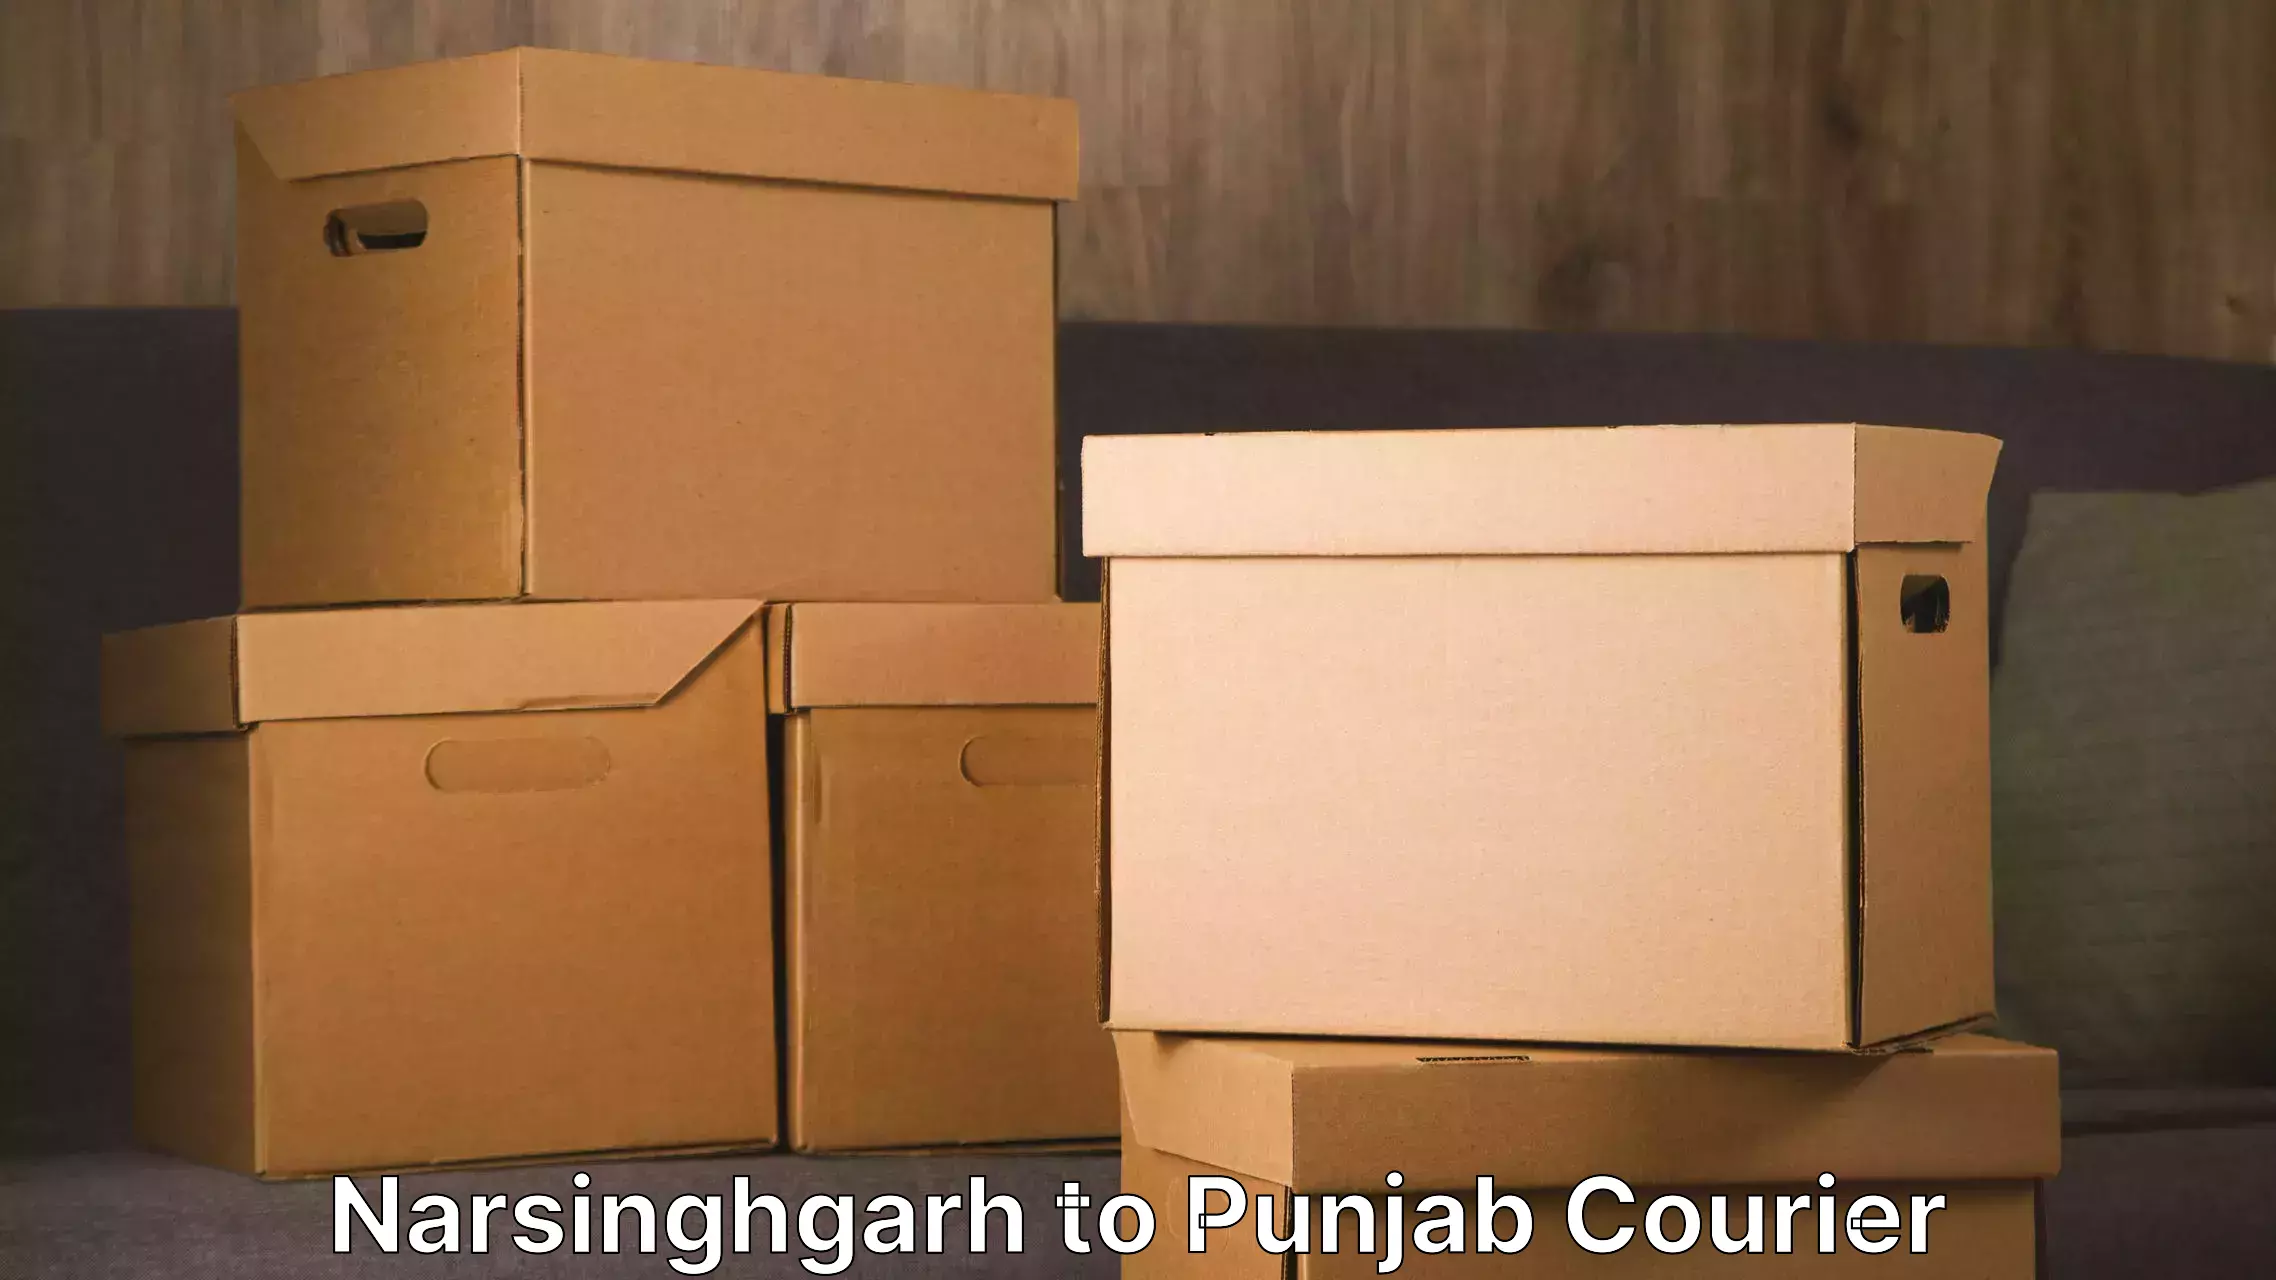 Furniture transport services Narsinghgarh to Zirakpur